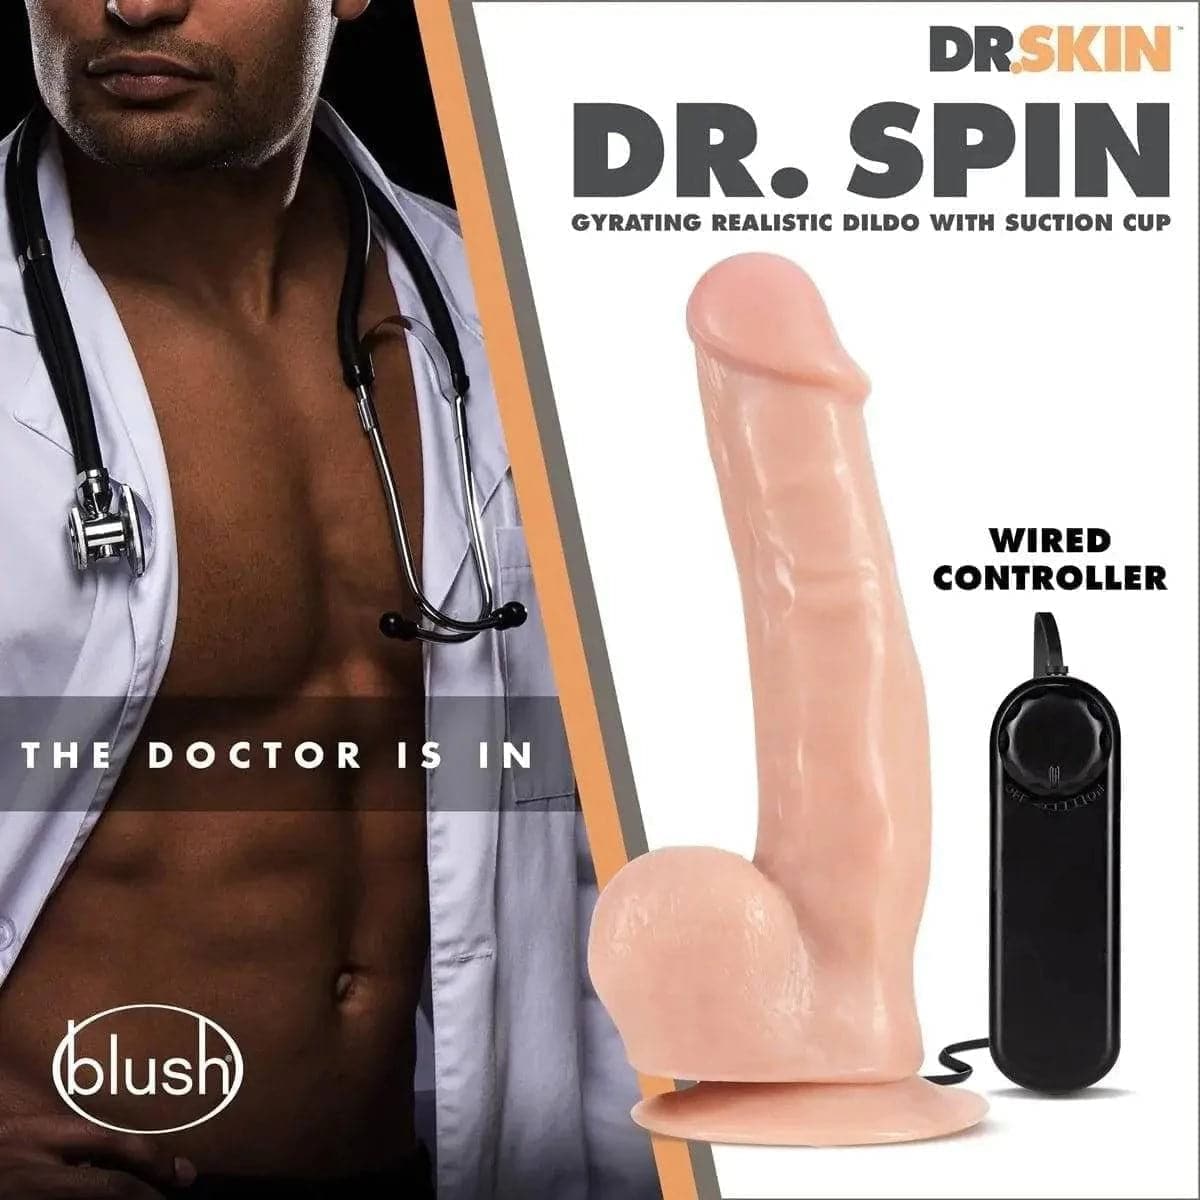 Vibrador Dr. Skin Rotativo Dr. Spin, 21.5cm Ø4cm, vibração regulável  Blush Novelties   